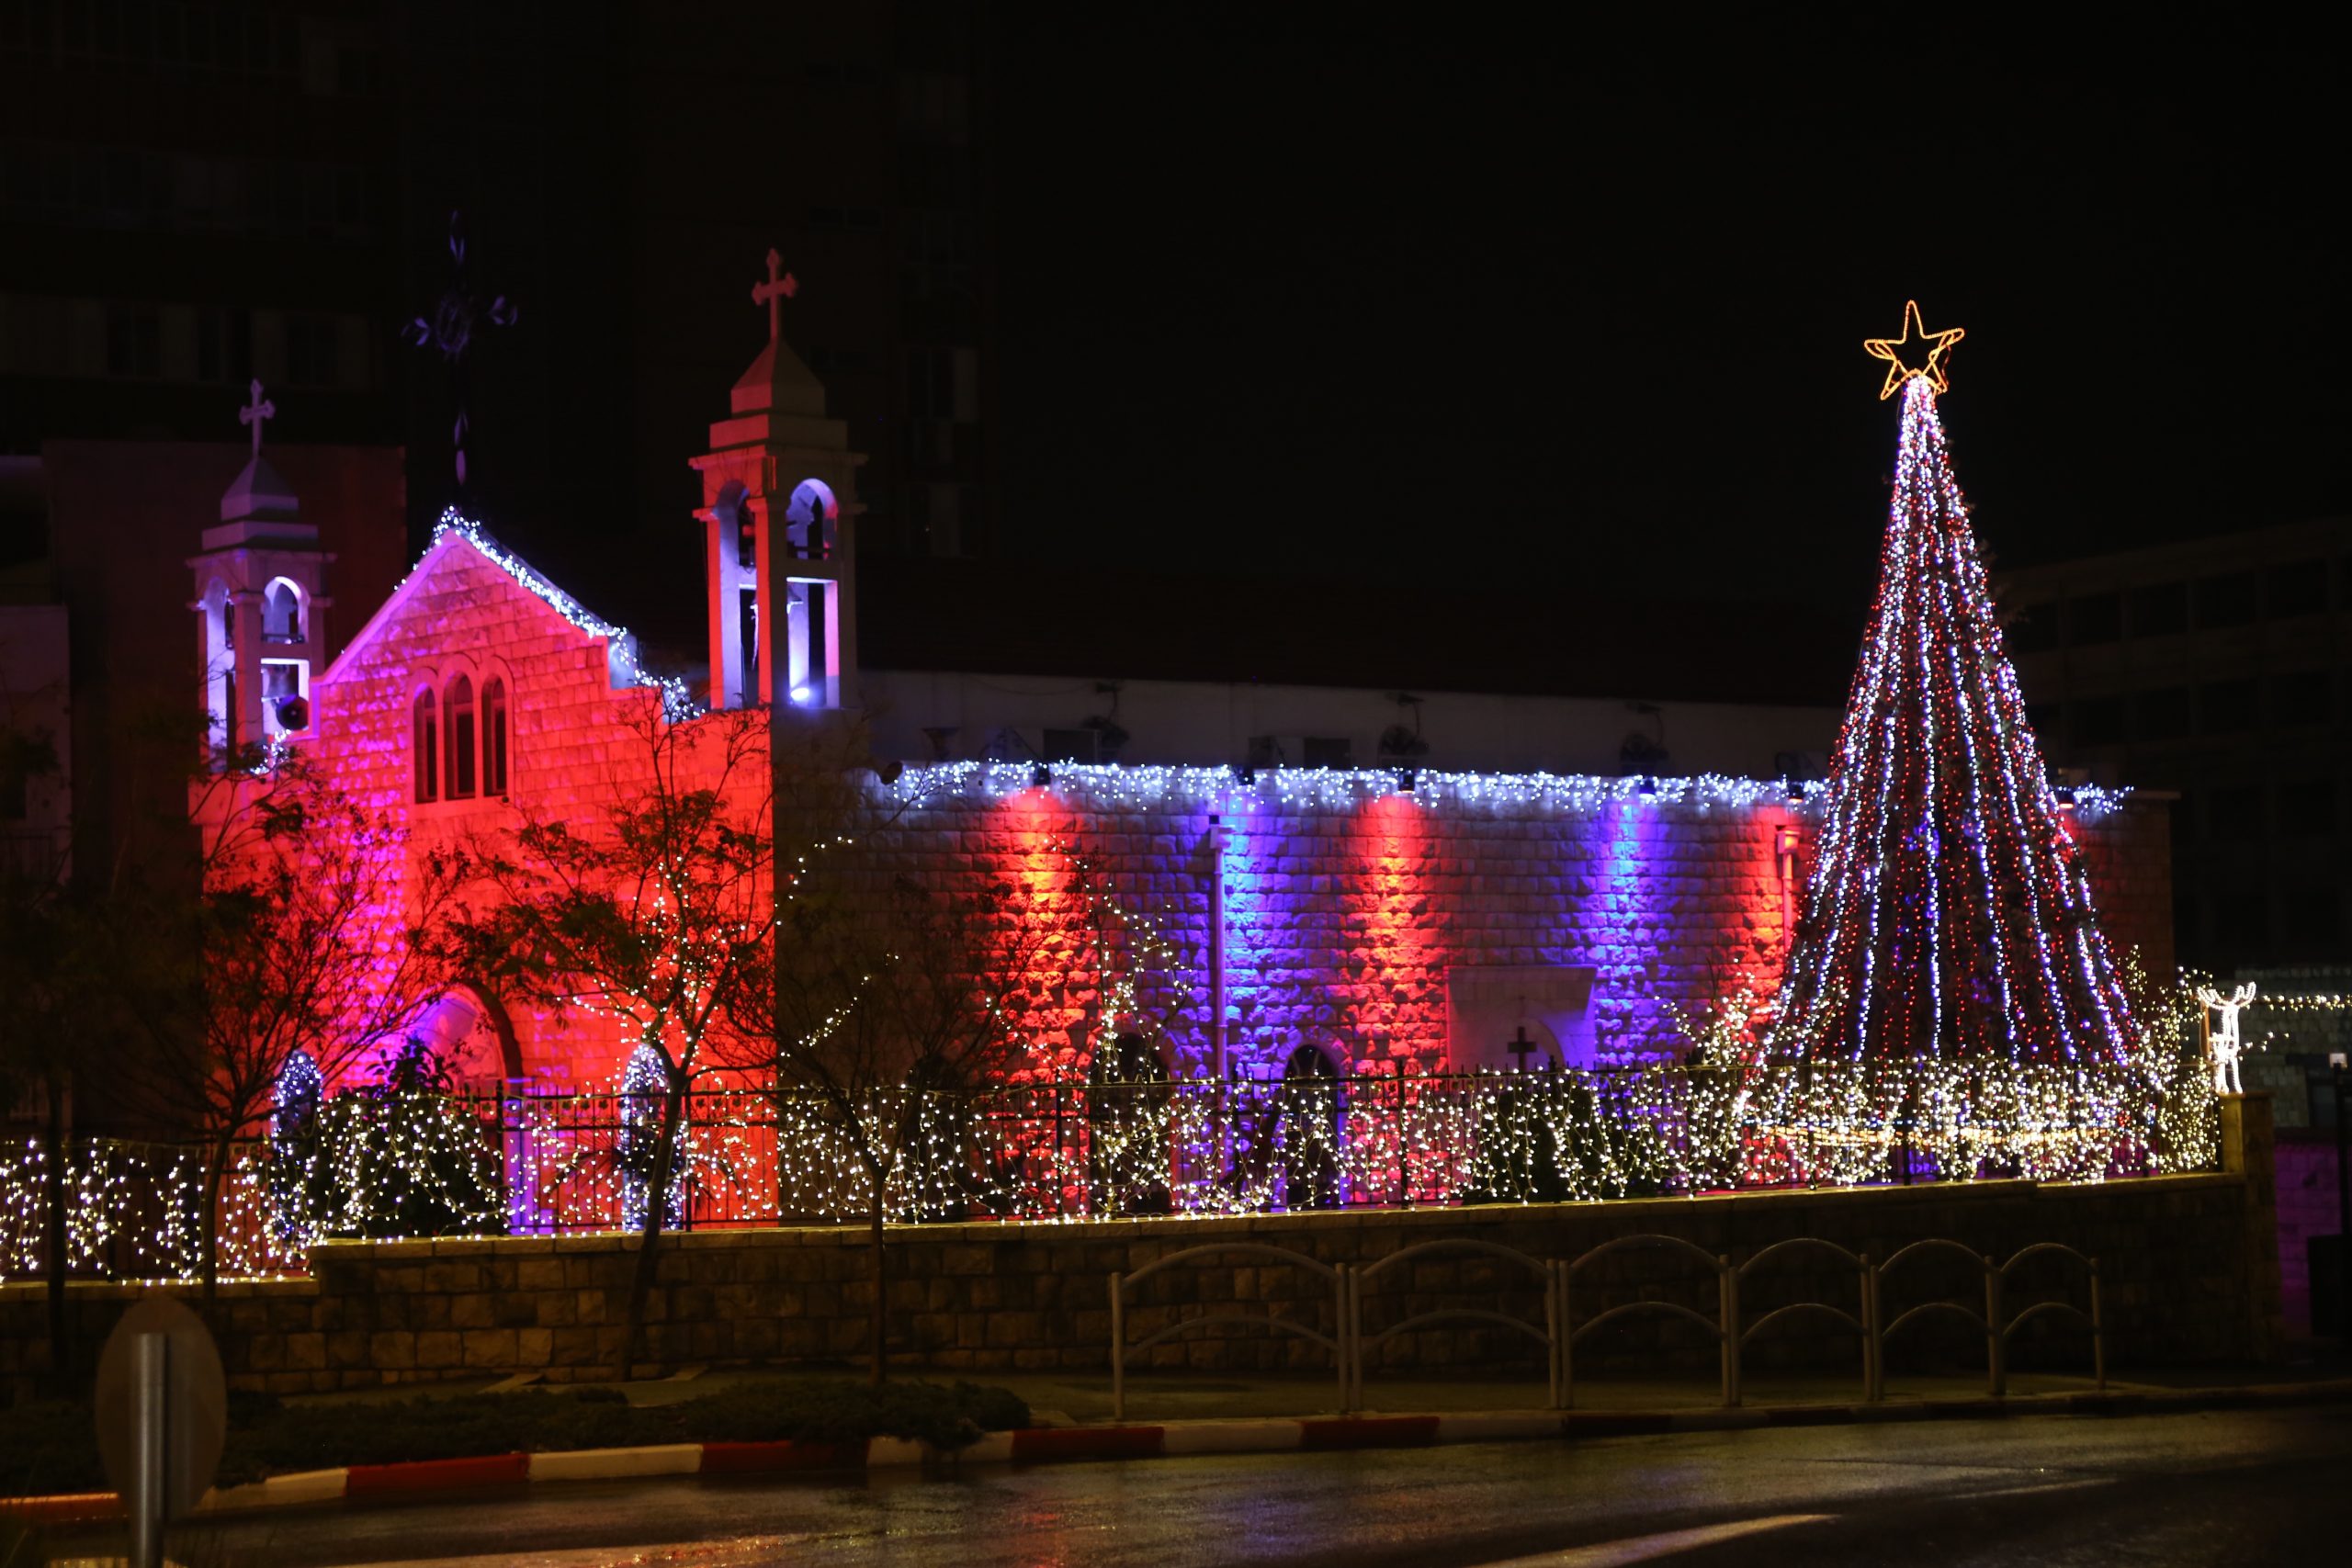 Lockdown for Christmas in Israel